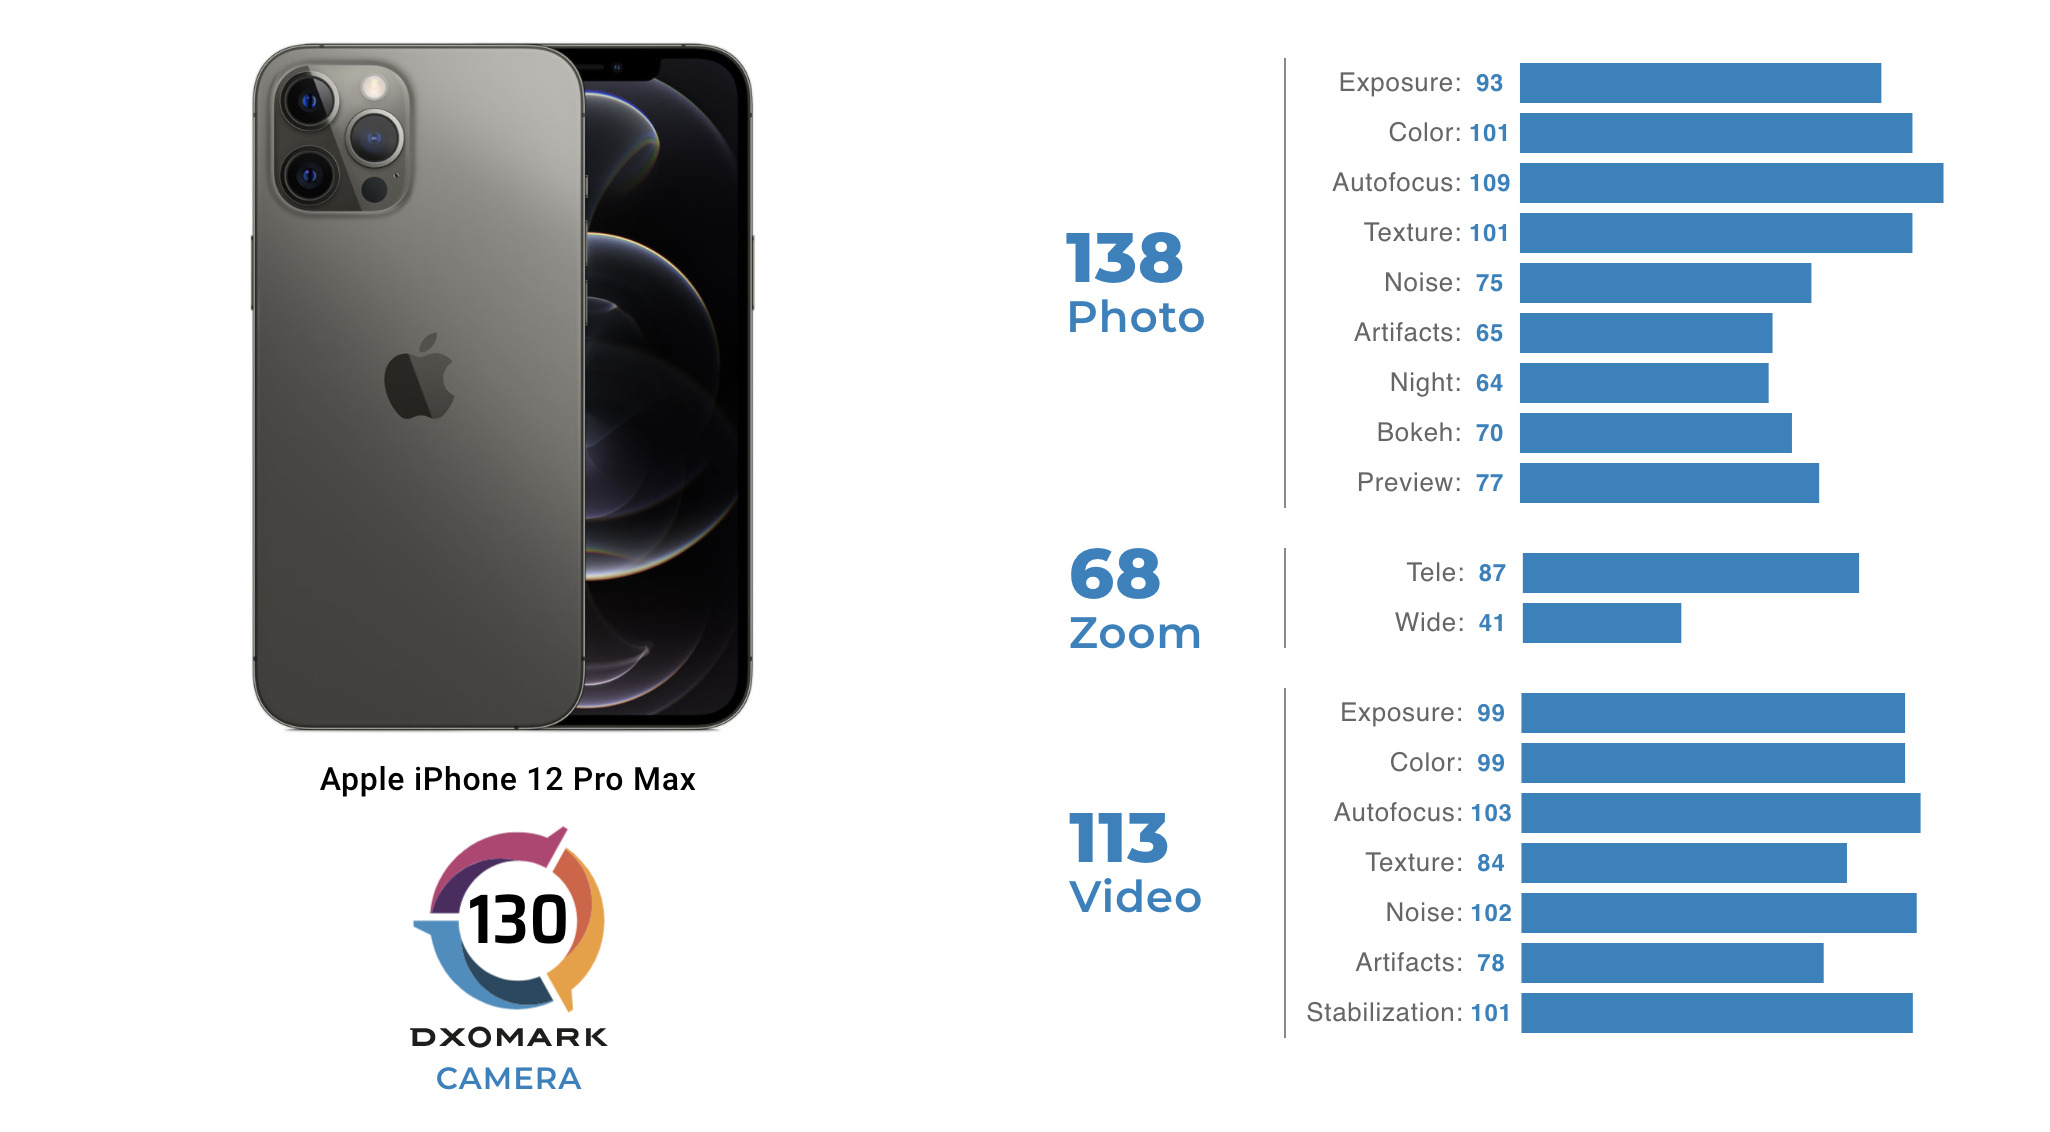 Les scores et sous-scores de l'appareil photo de l'iPhone 12 Pro Max // Source : DxOMARK